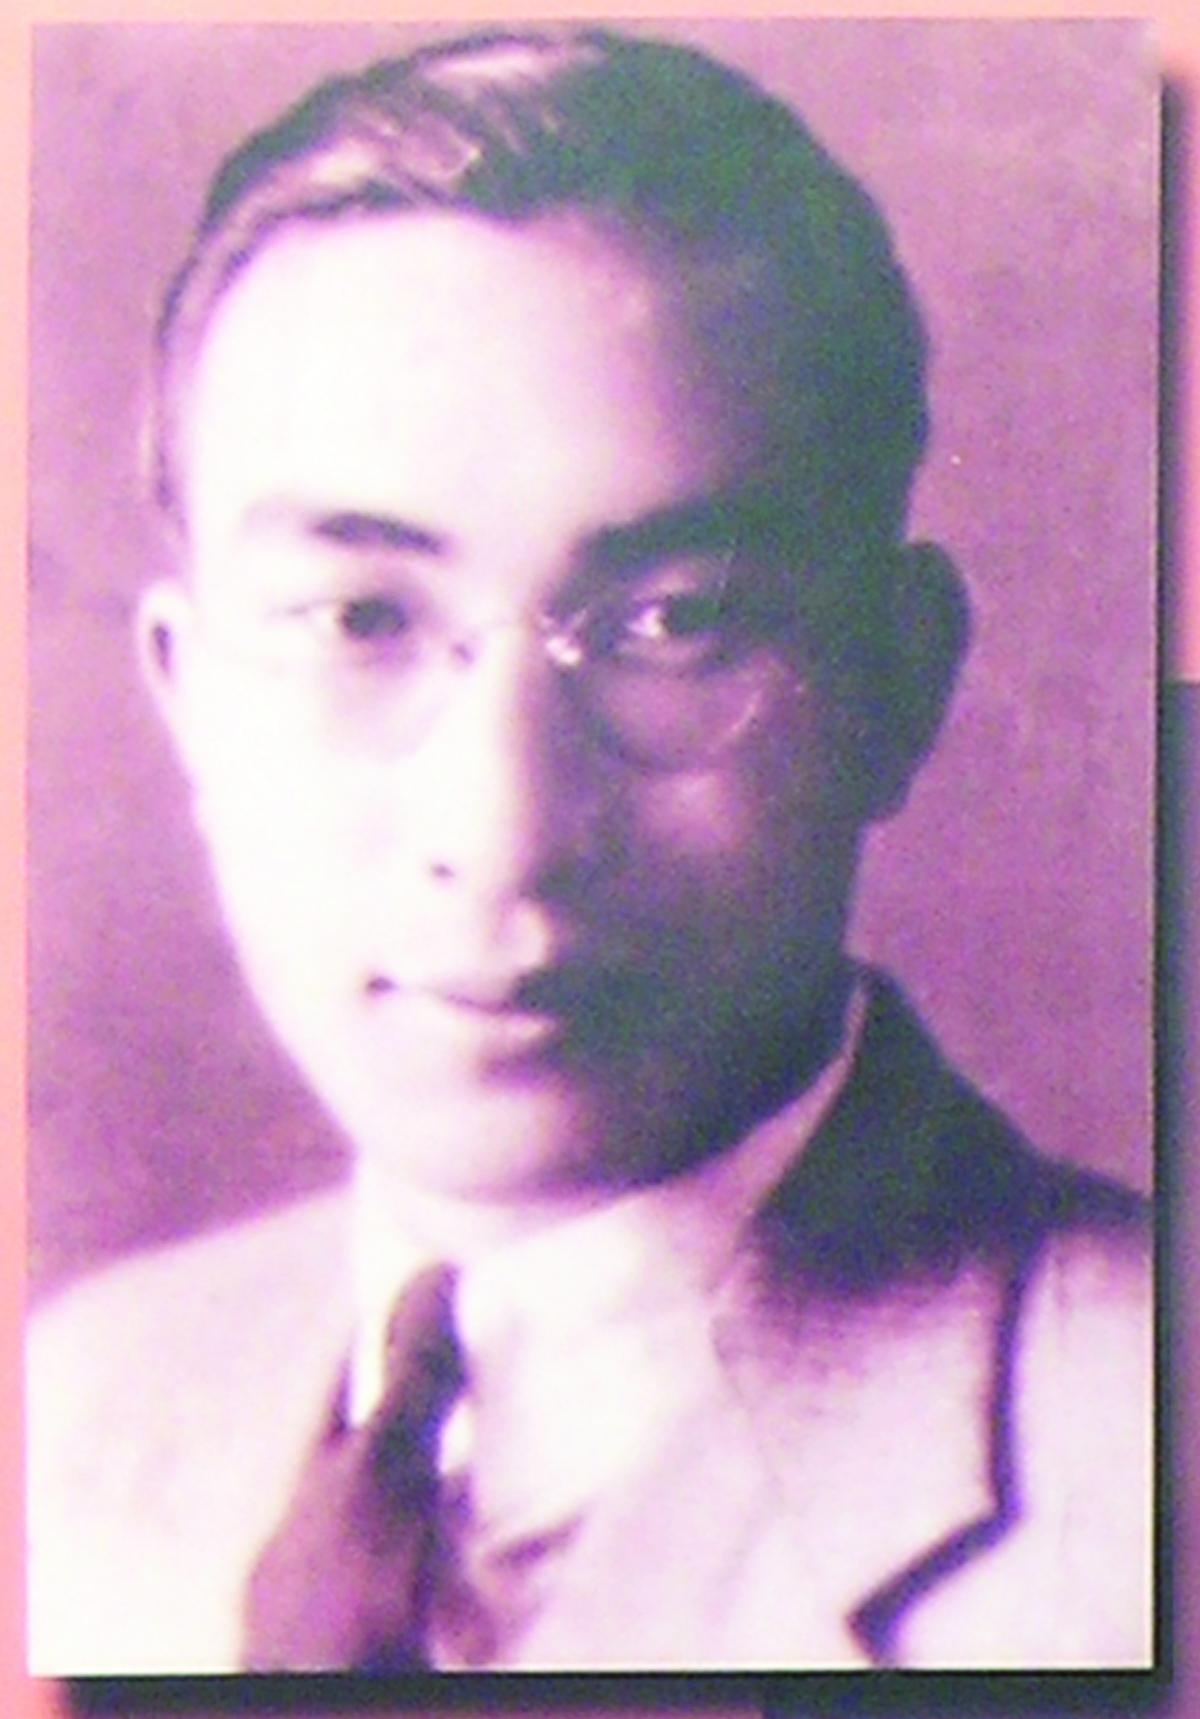 Chen Yingqian